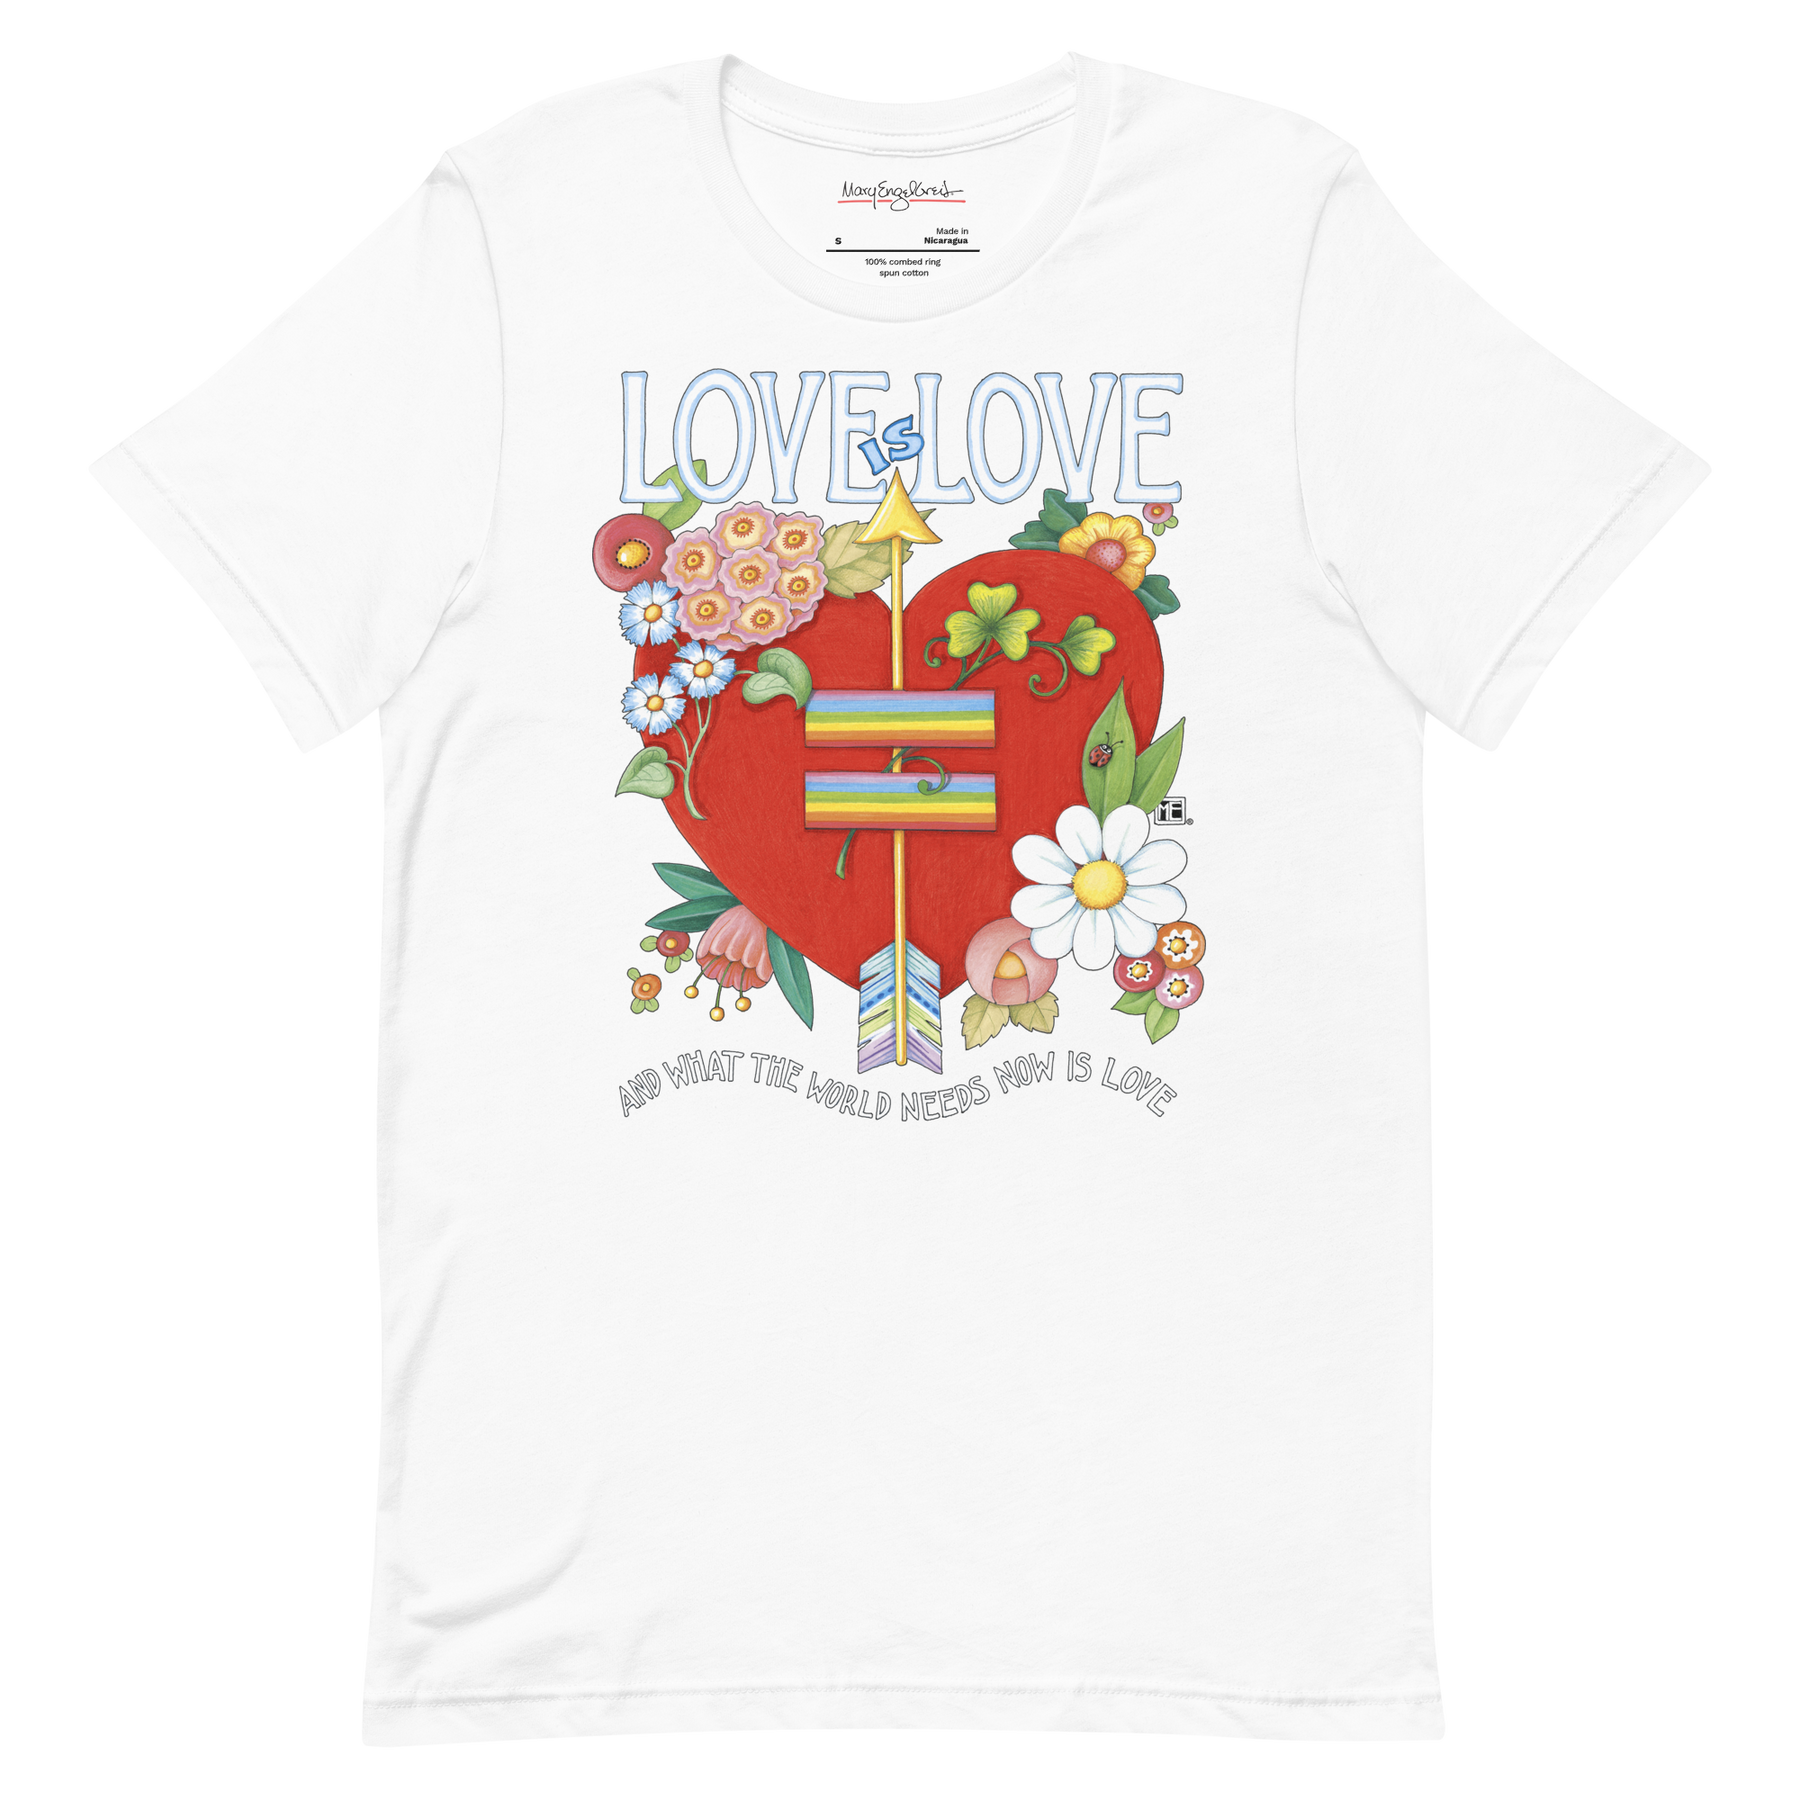 Love World Heart Unisex T-Shirt